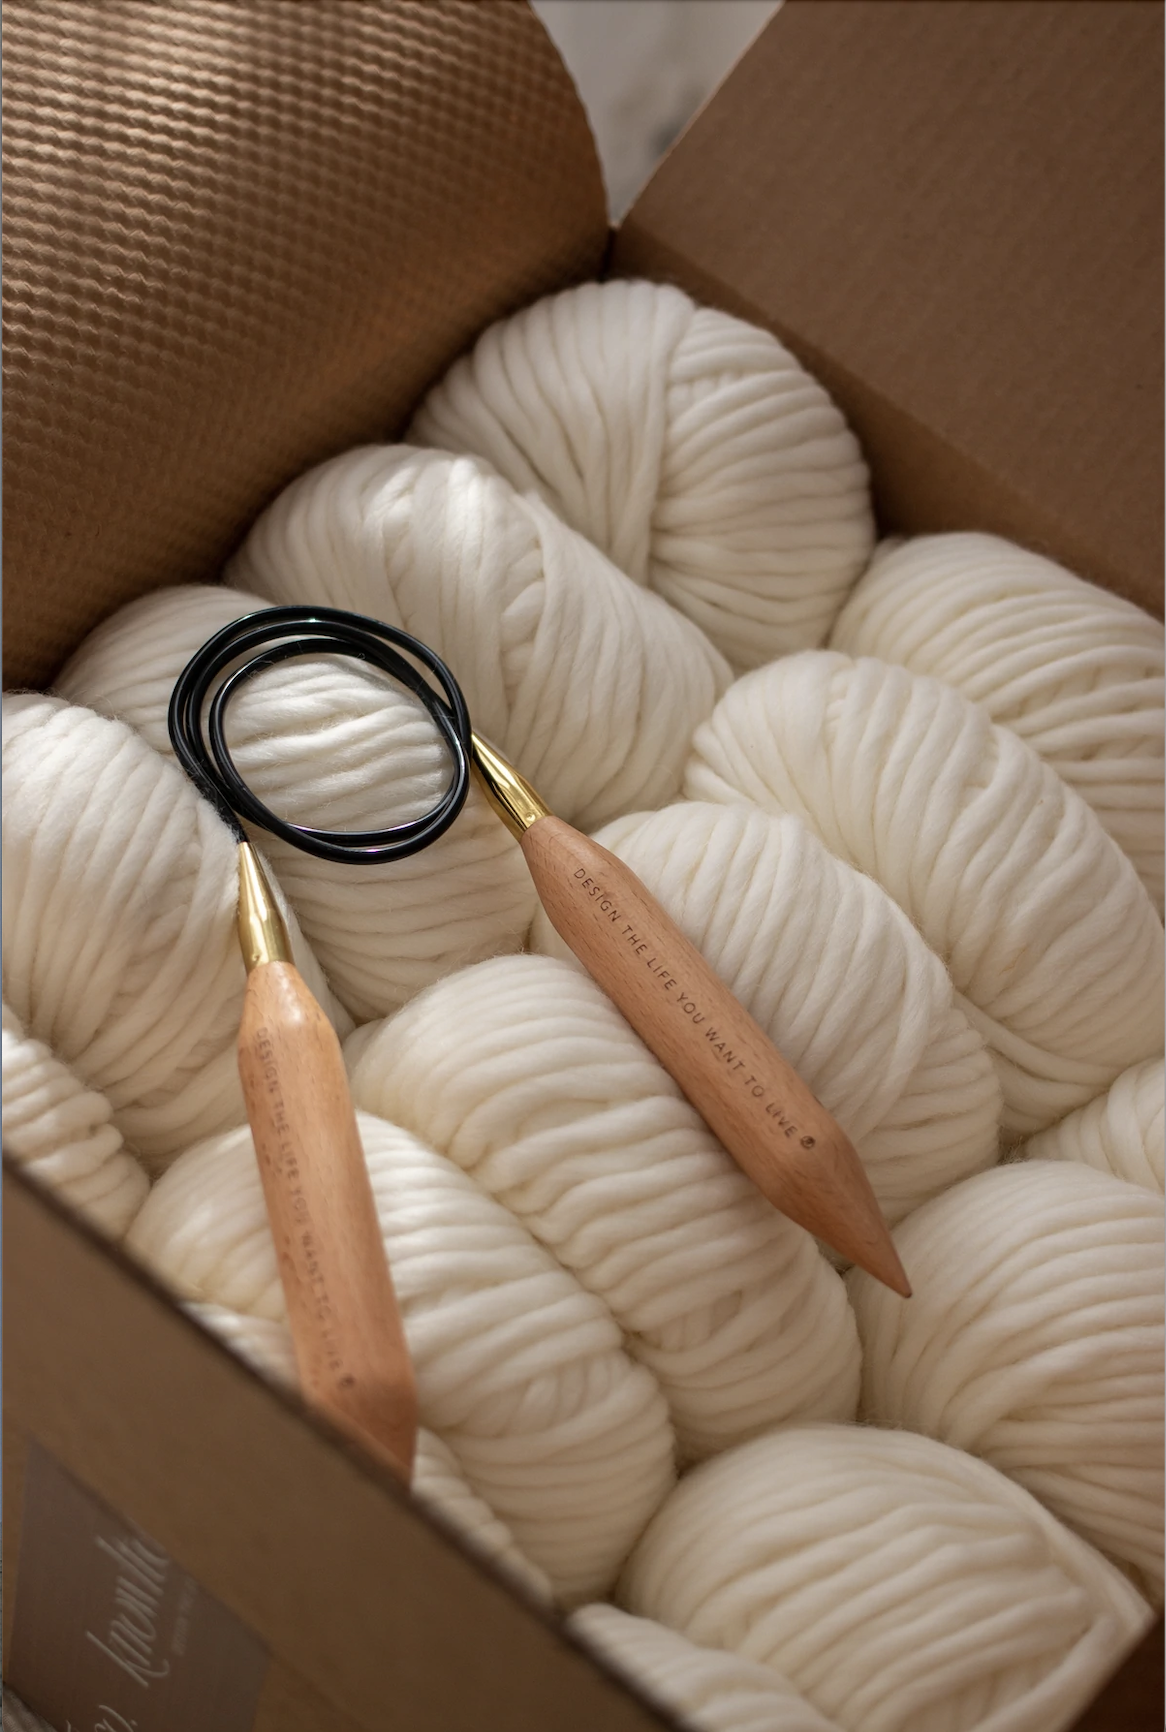 FREE chunky knit blanket pattern. Knit a blanket in a weekend! Easy beginner pattern!